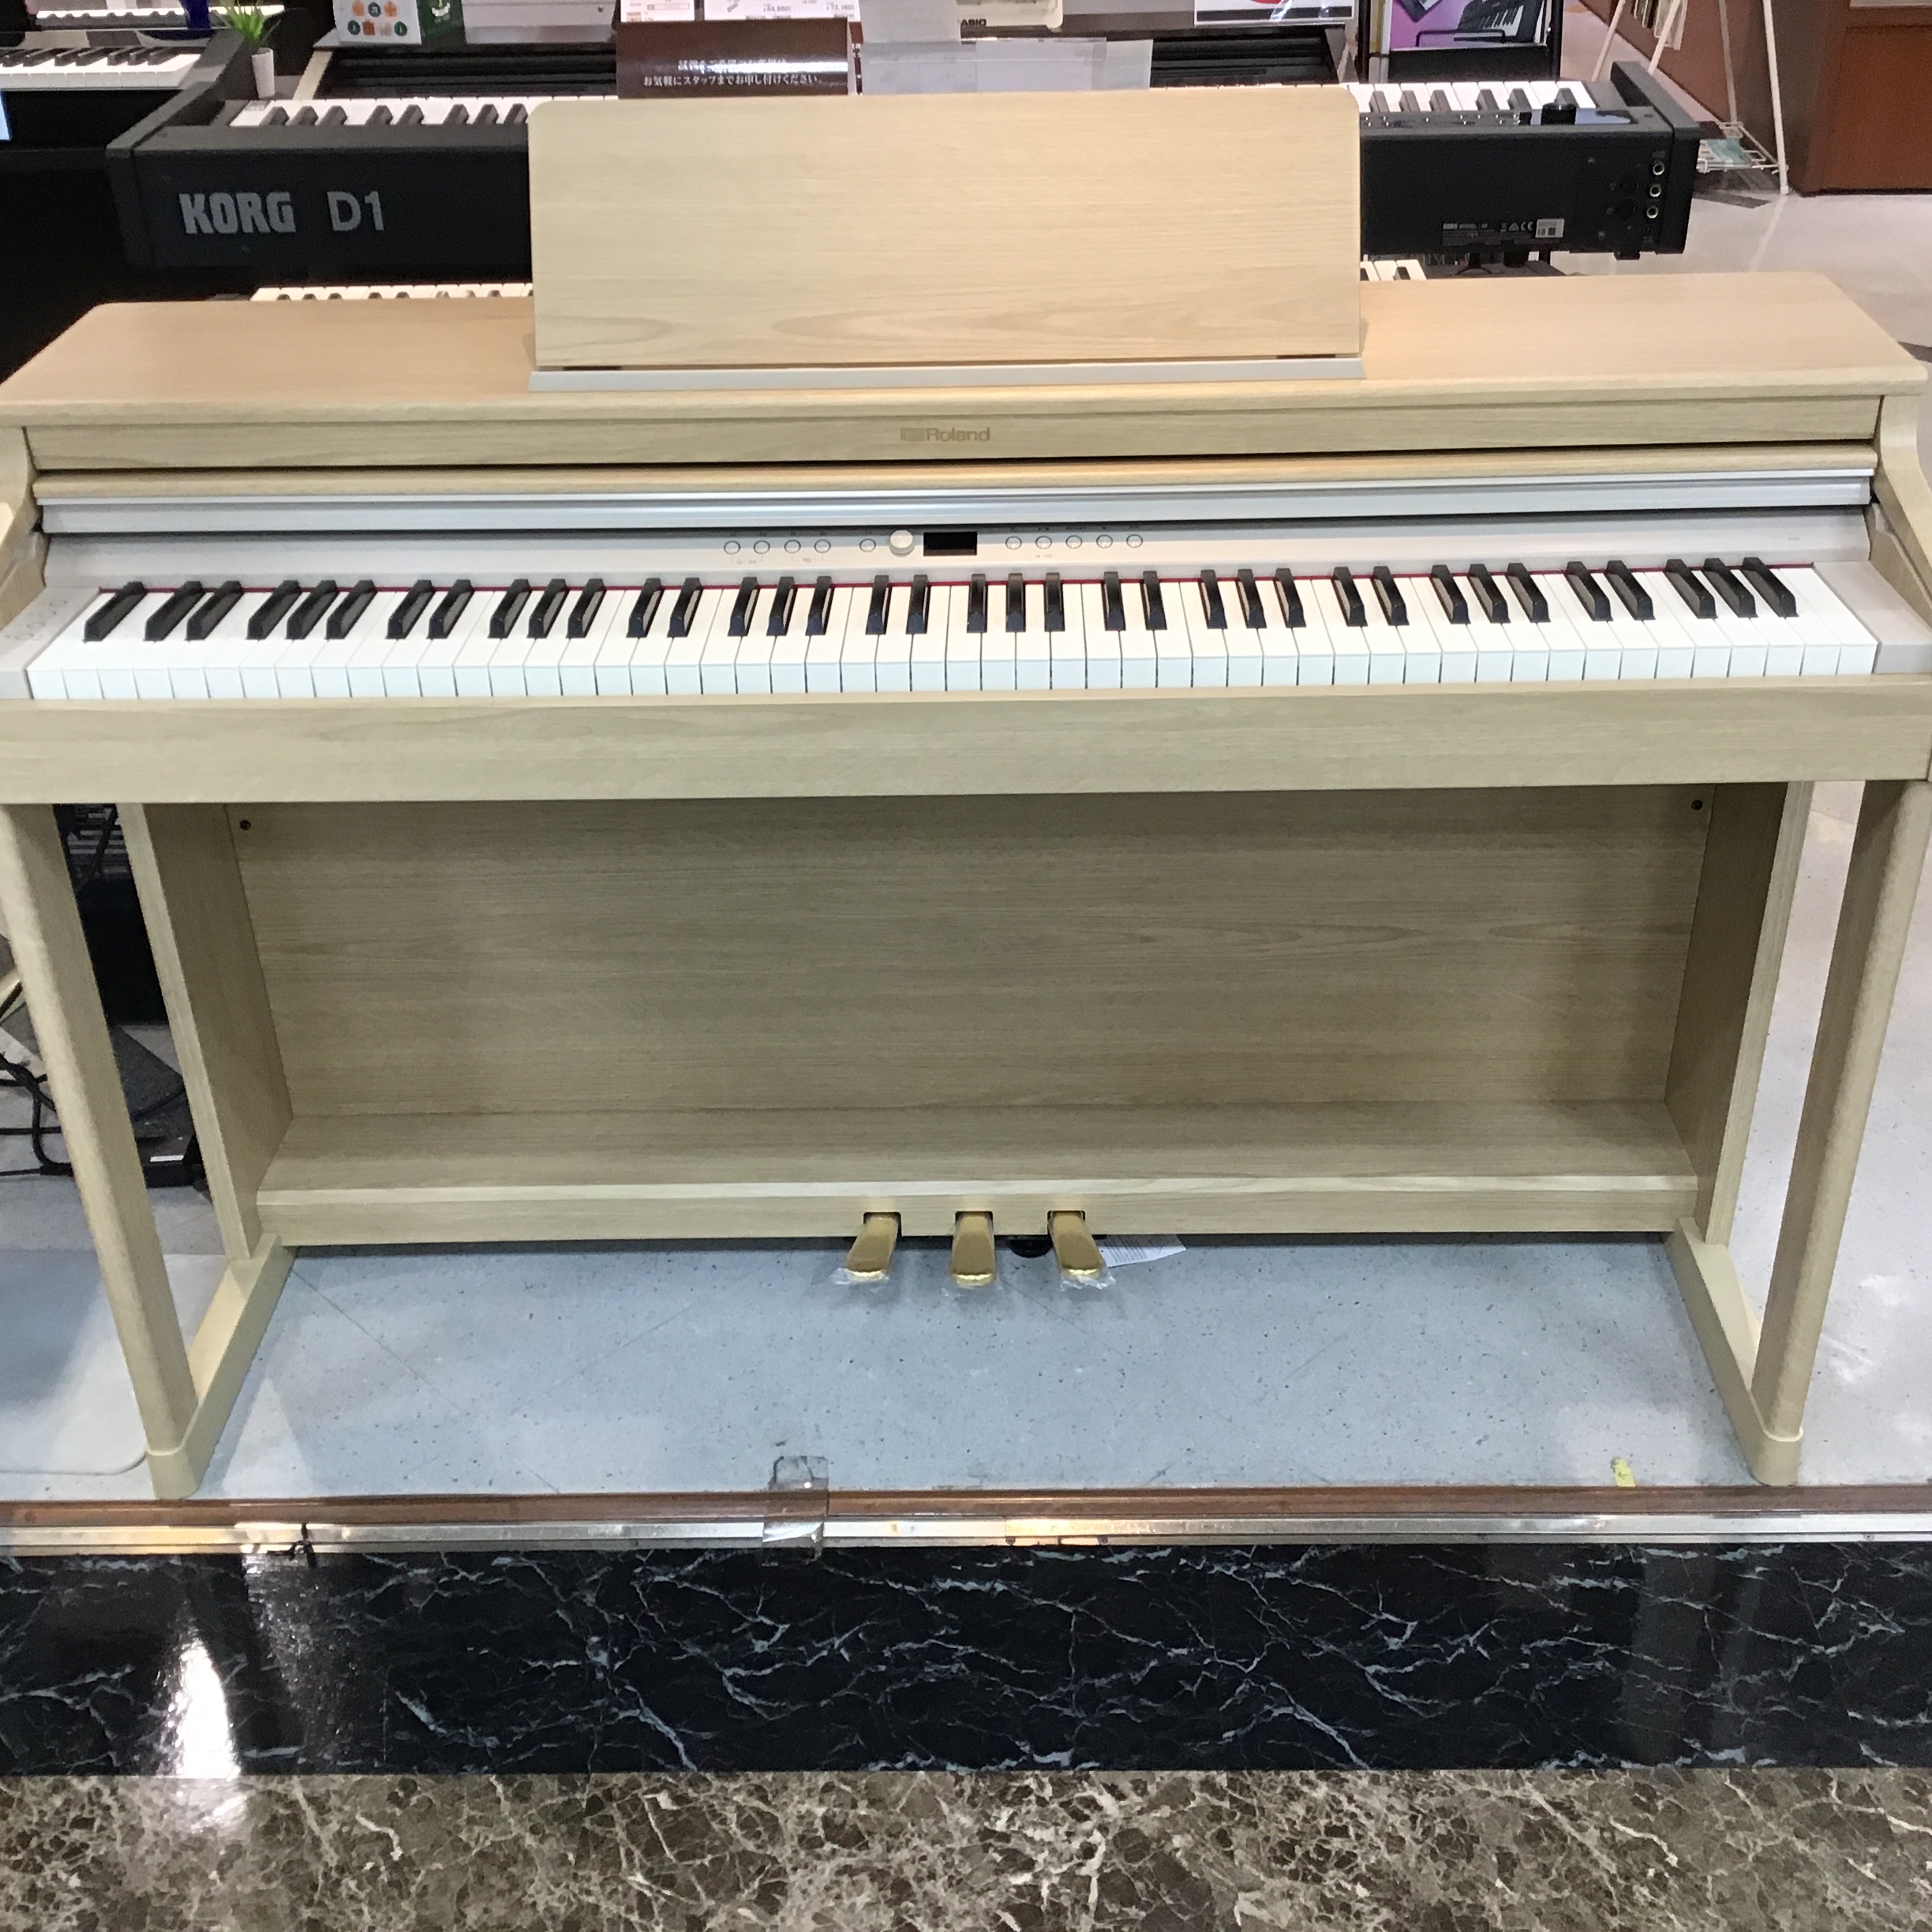 Roland 電子ピアノ RP701